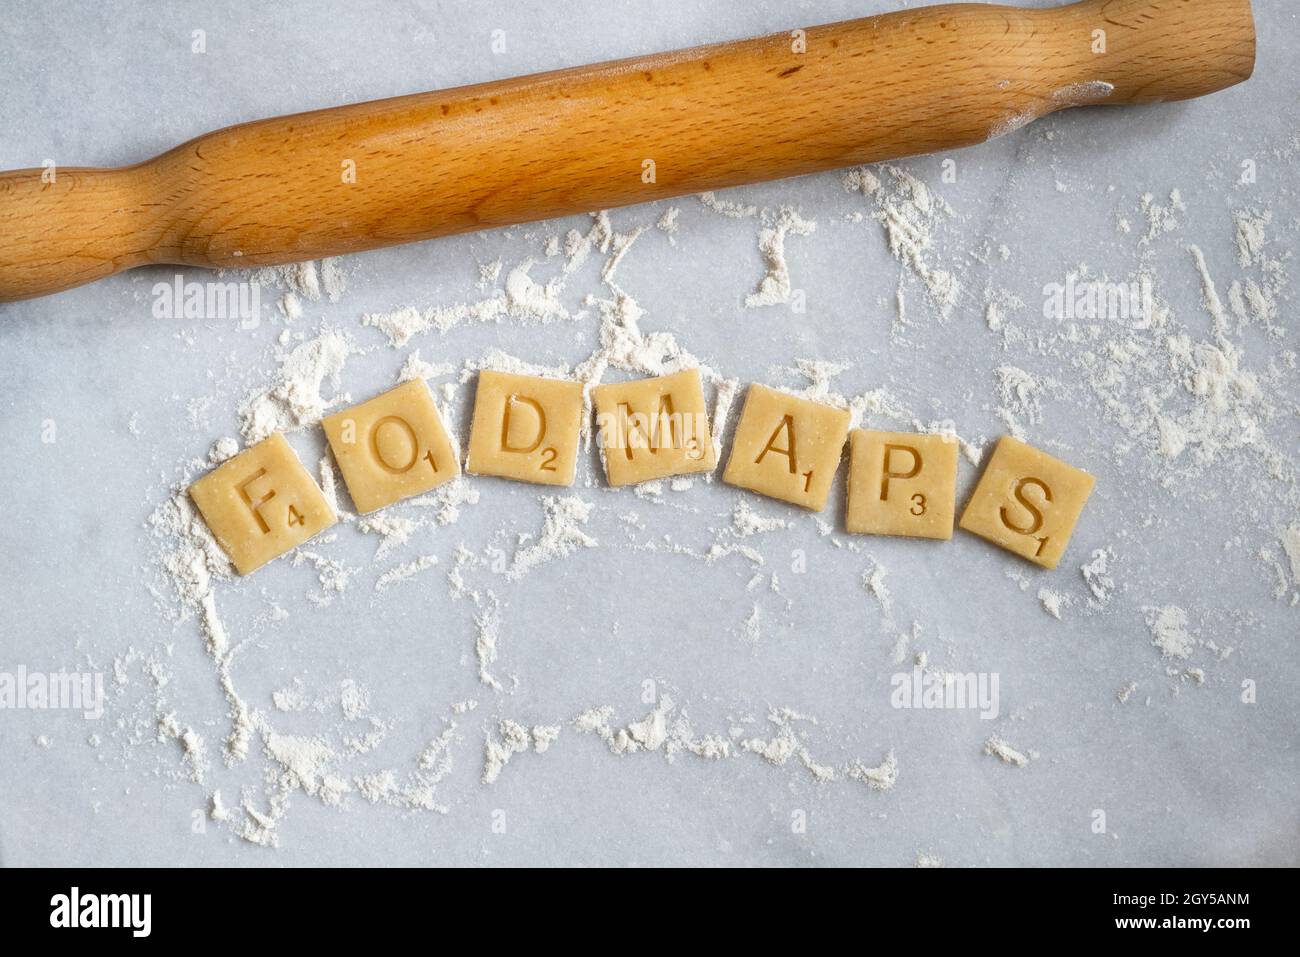 Cuadrados de pastelería de trigo que deletrean 'Fodmaps'. Foto de stock